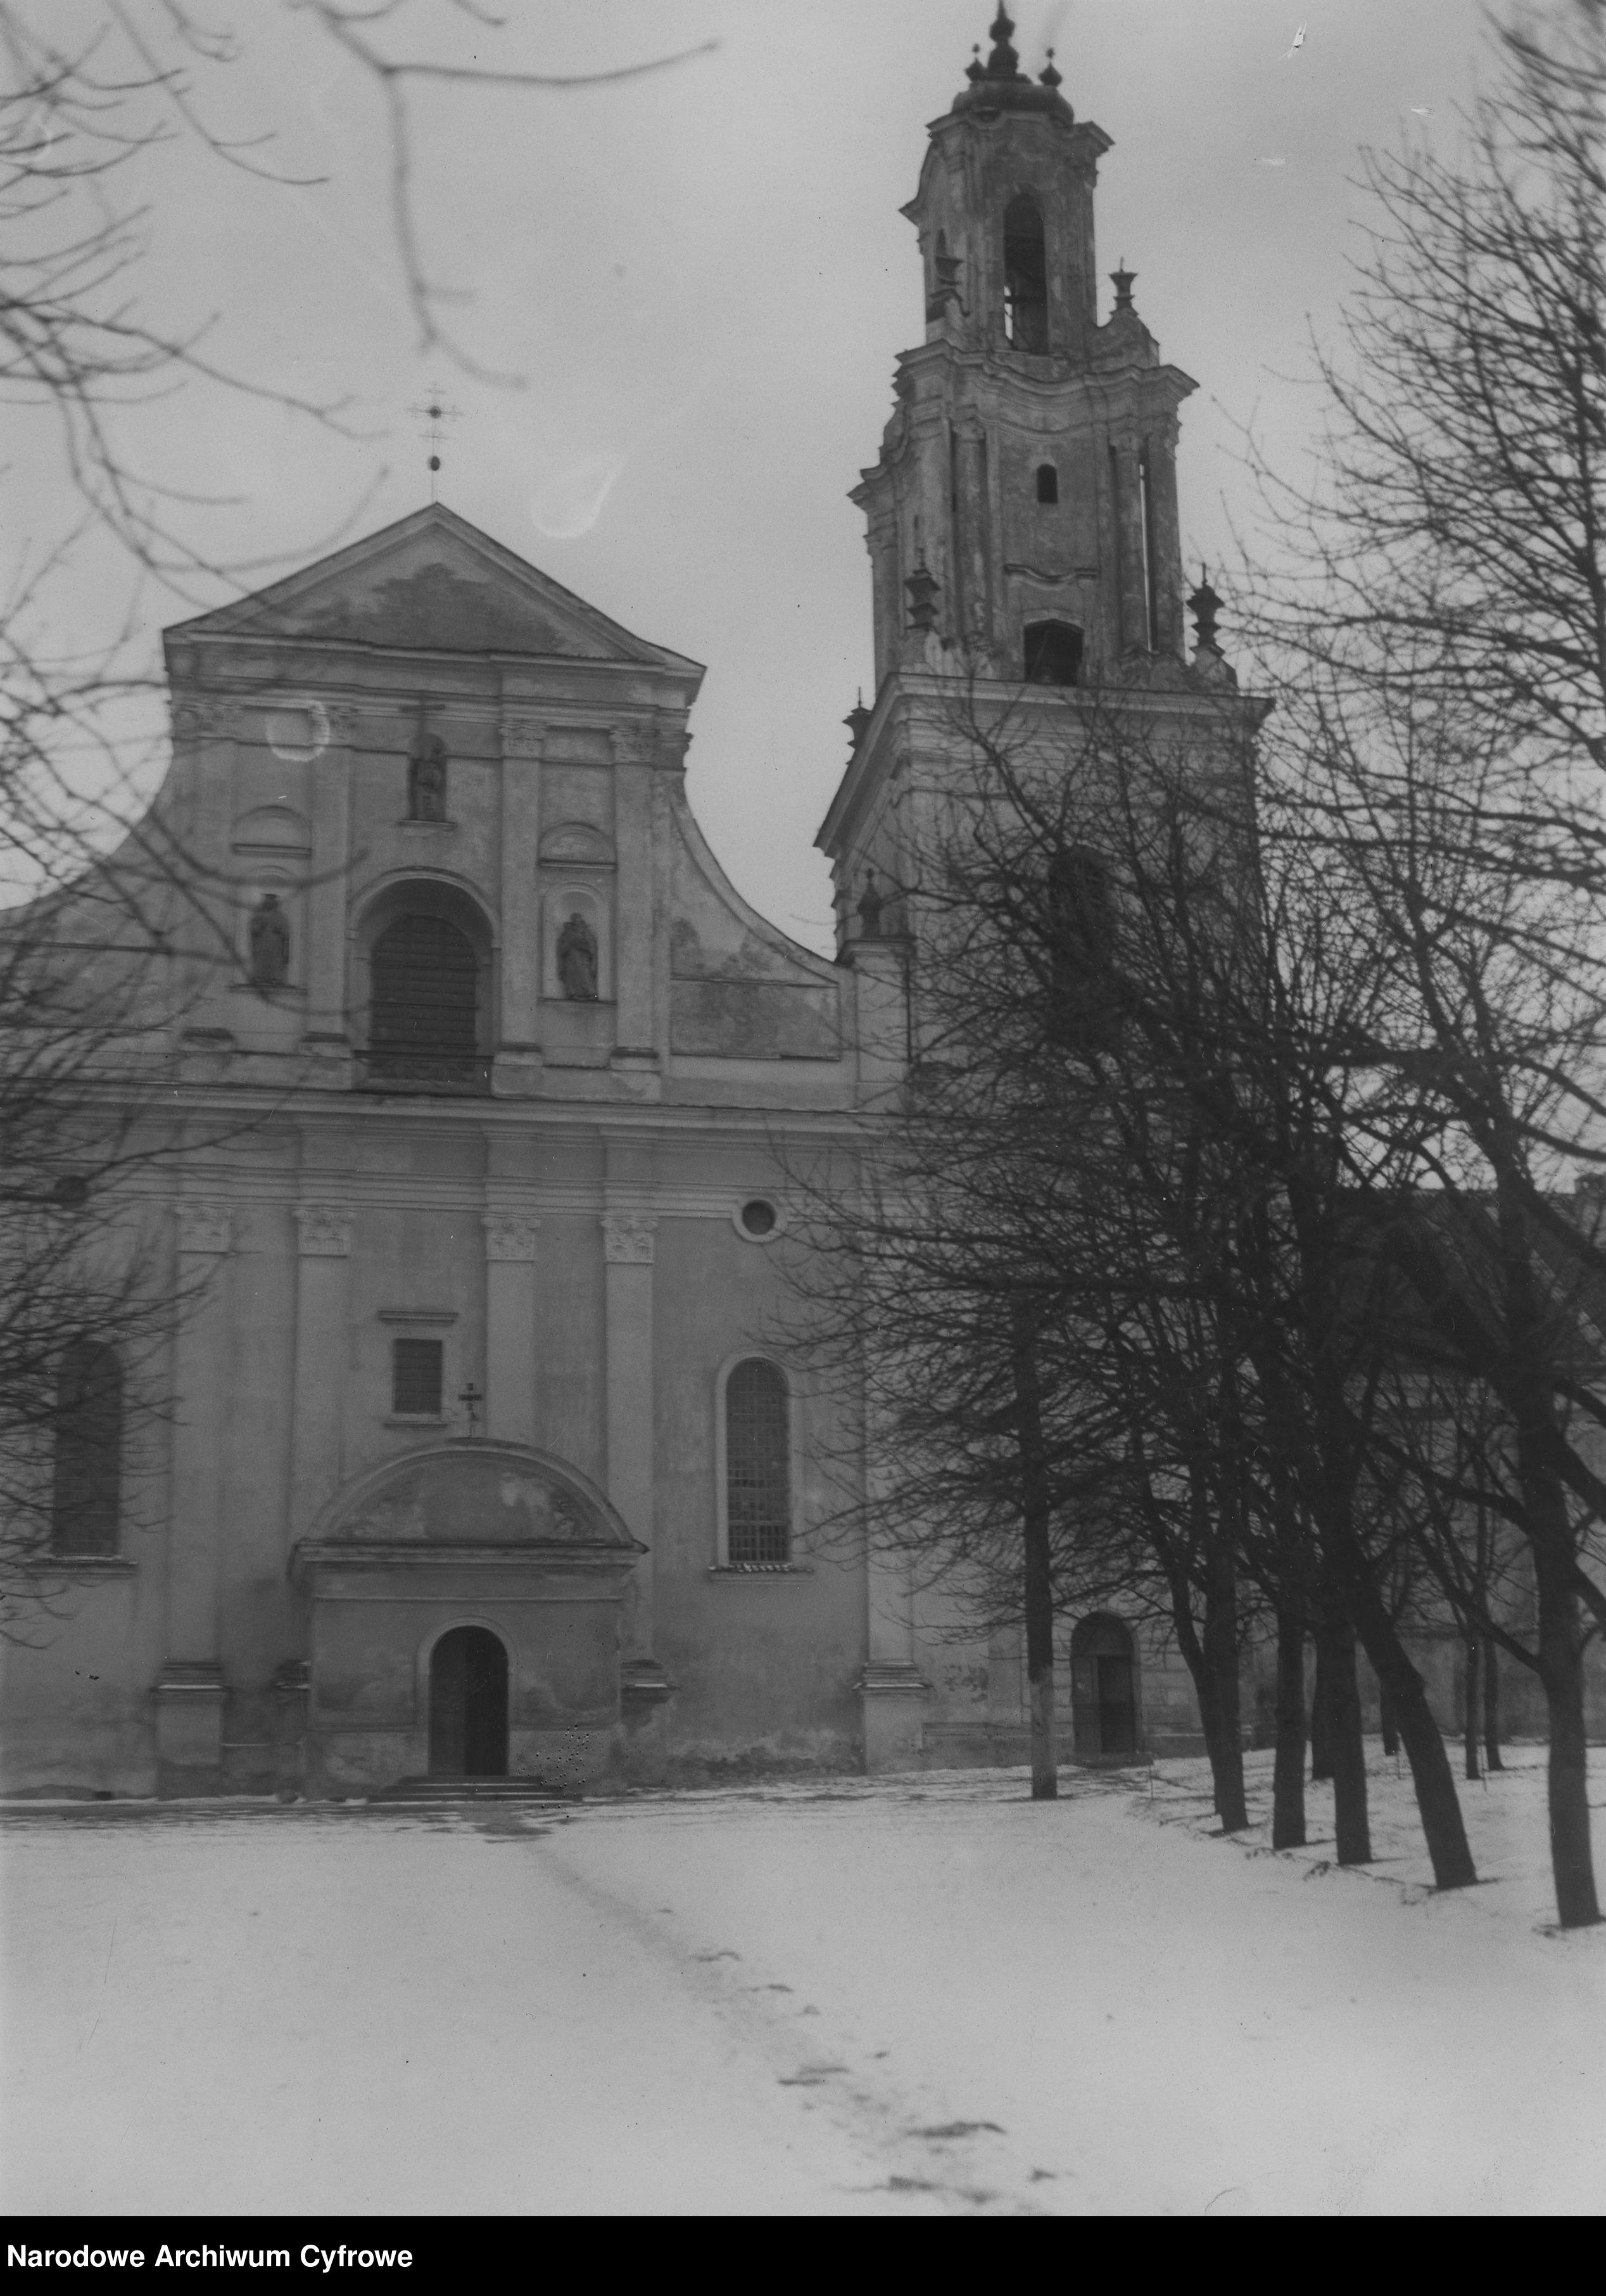 Grodno. Church of the Discovery of the Holy Cross, photo NAC, https://www.szukajwarchiwach.gov.pl/jednostka/-/jednostka/5923463, photo (public domain).